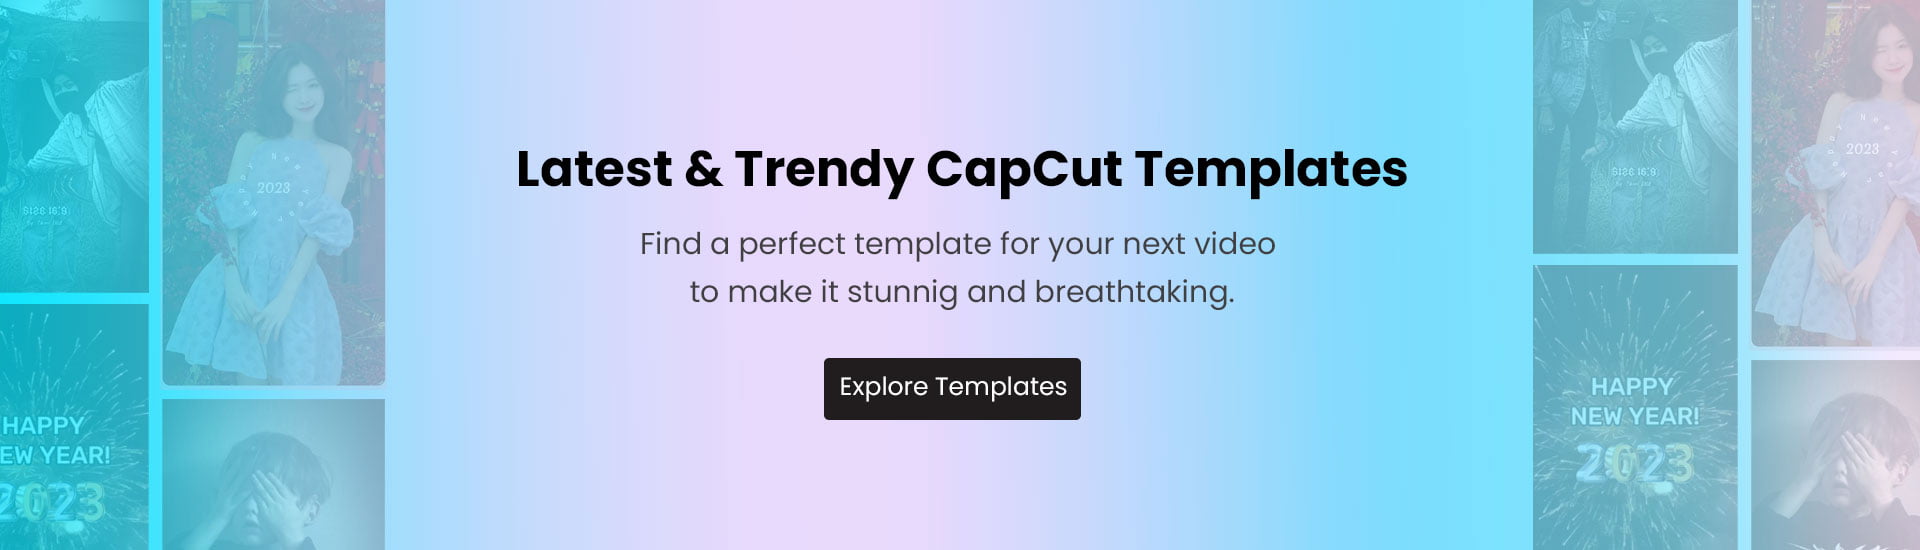 capcut-templates-banner